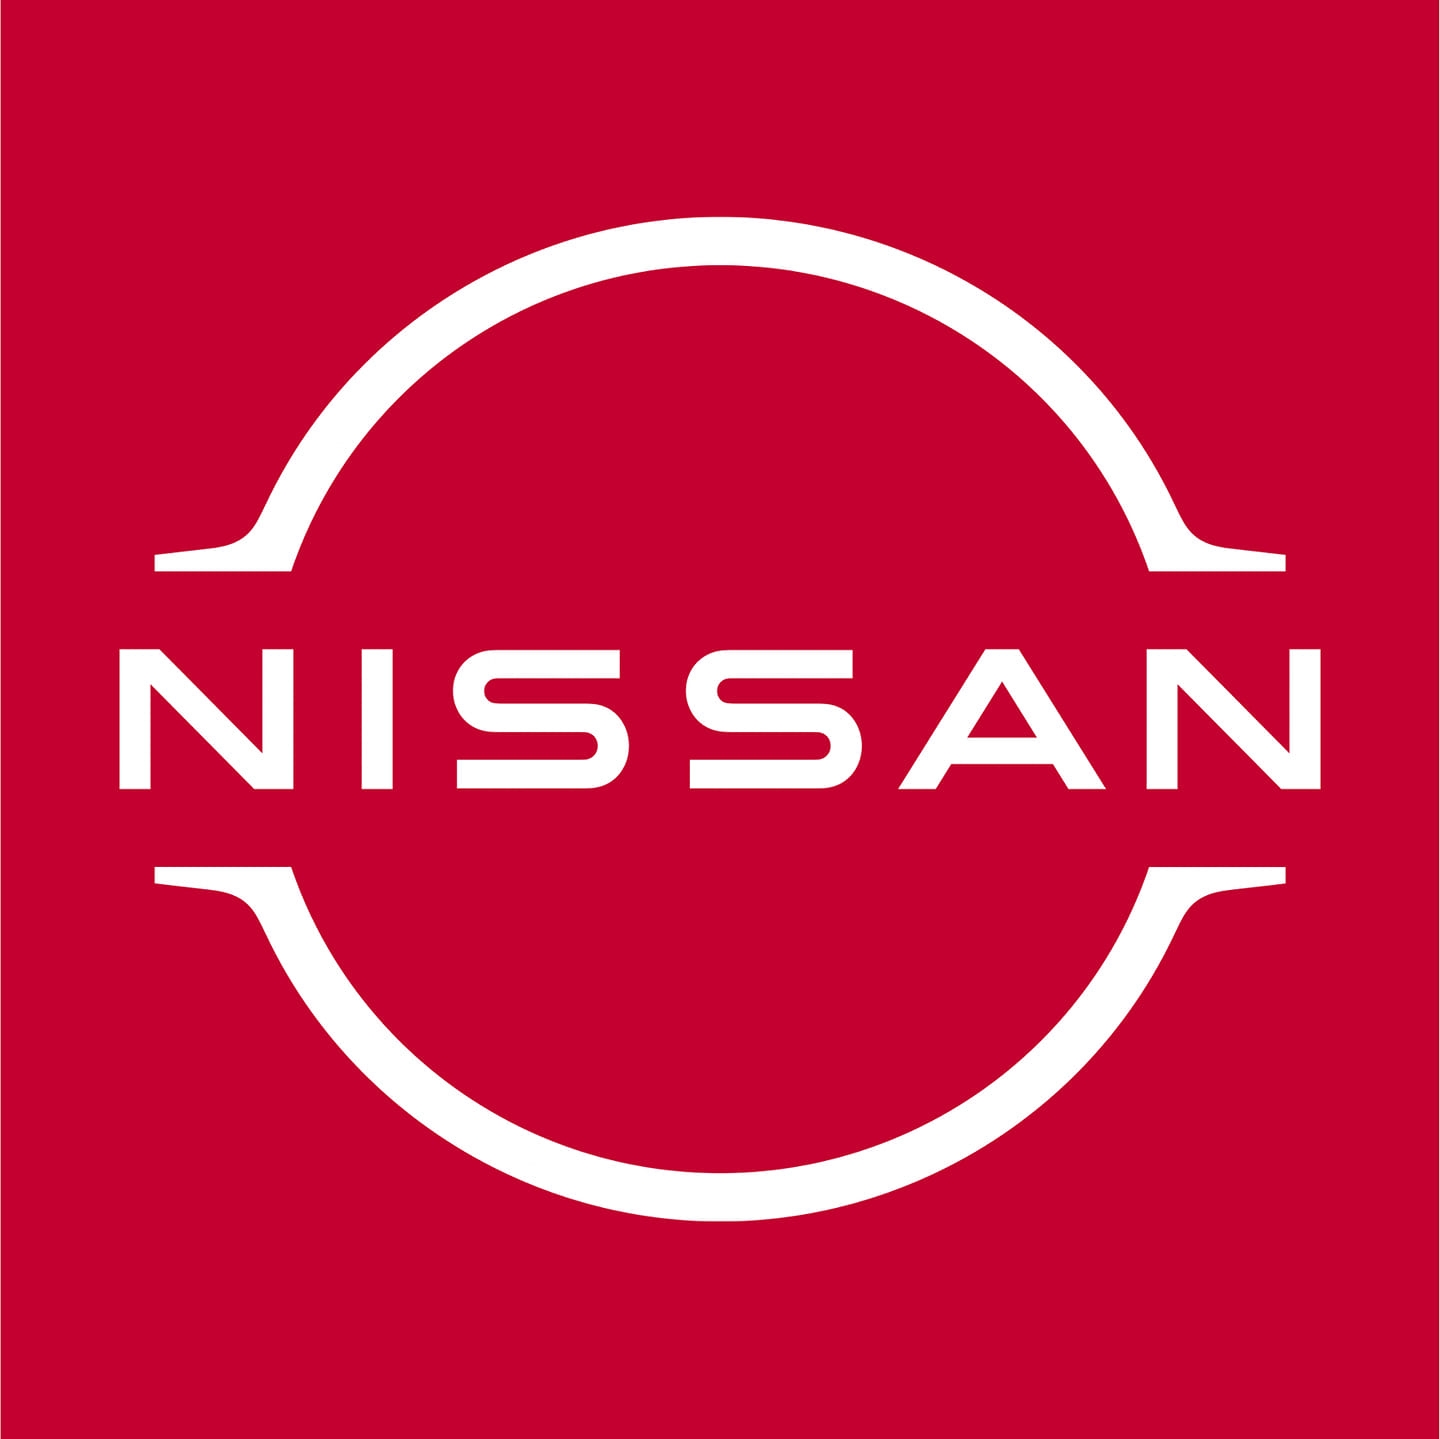 JUBILANT NISSAN VELLORE Logo